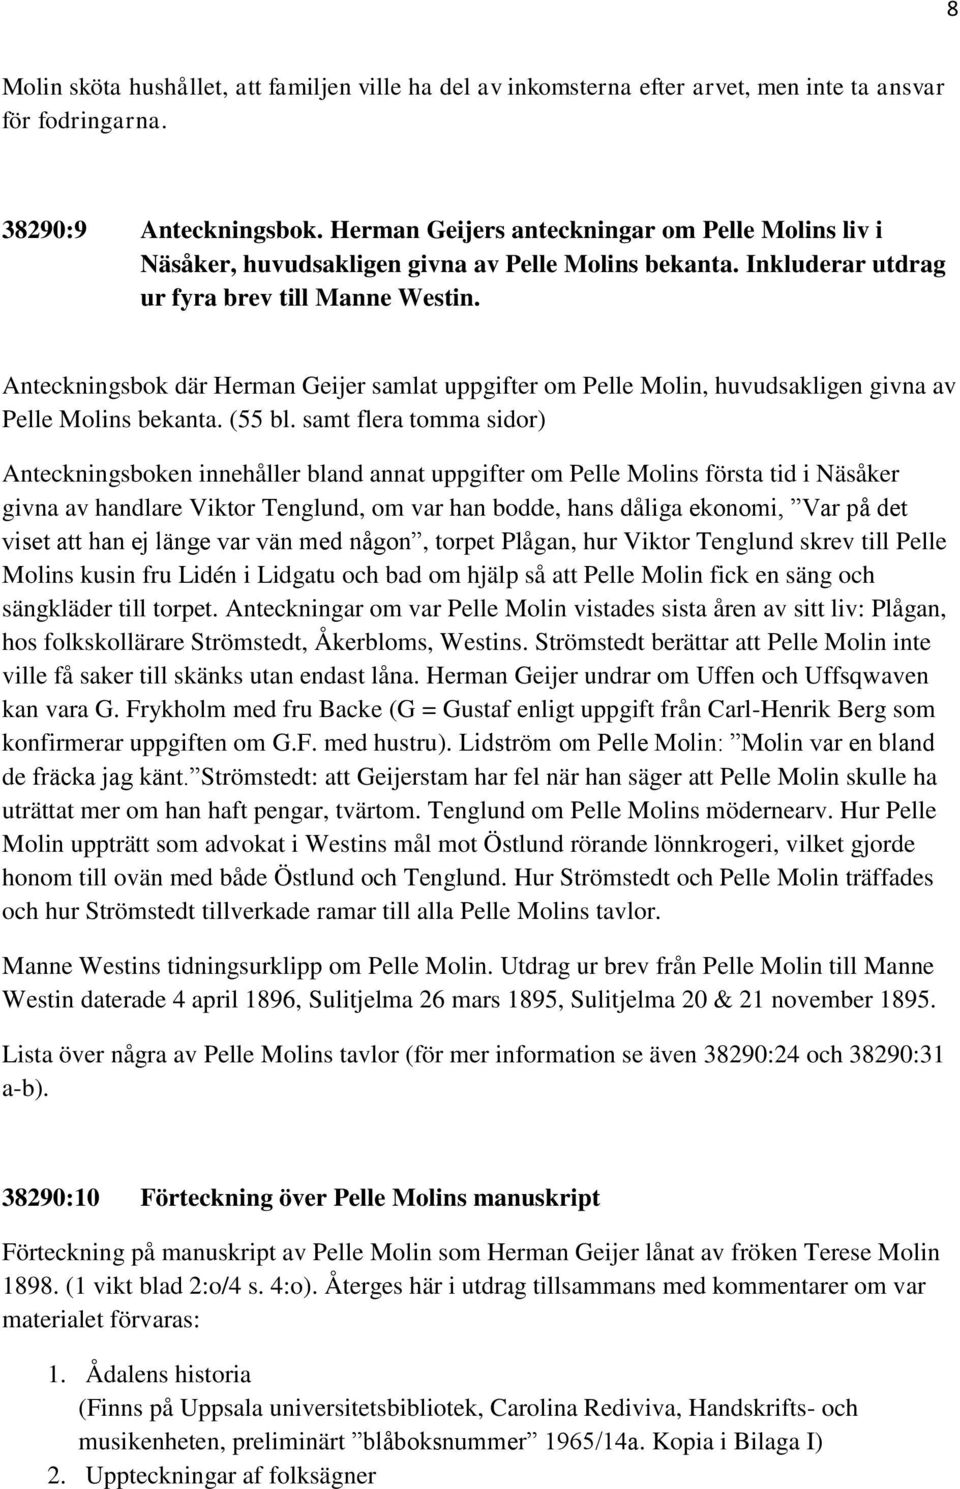 Anteckningsbok där Herman Geijer samlat uppgifter om Pelle Molin, huvudsakligen givna av Pelle Molins bekanta. (55 bl.